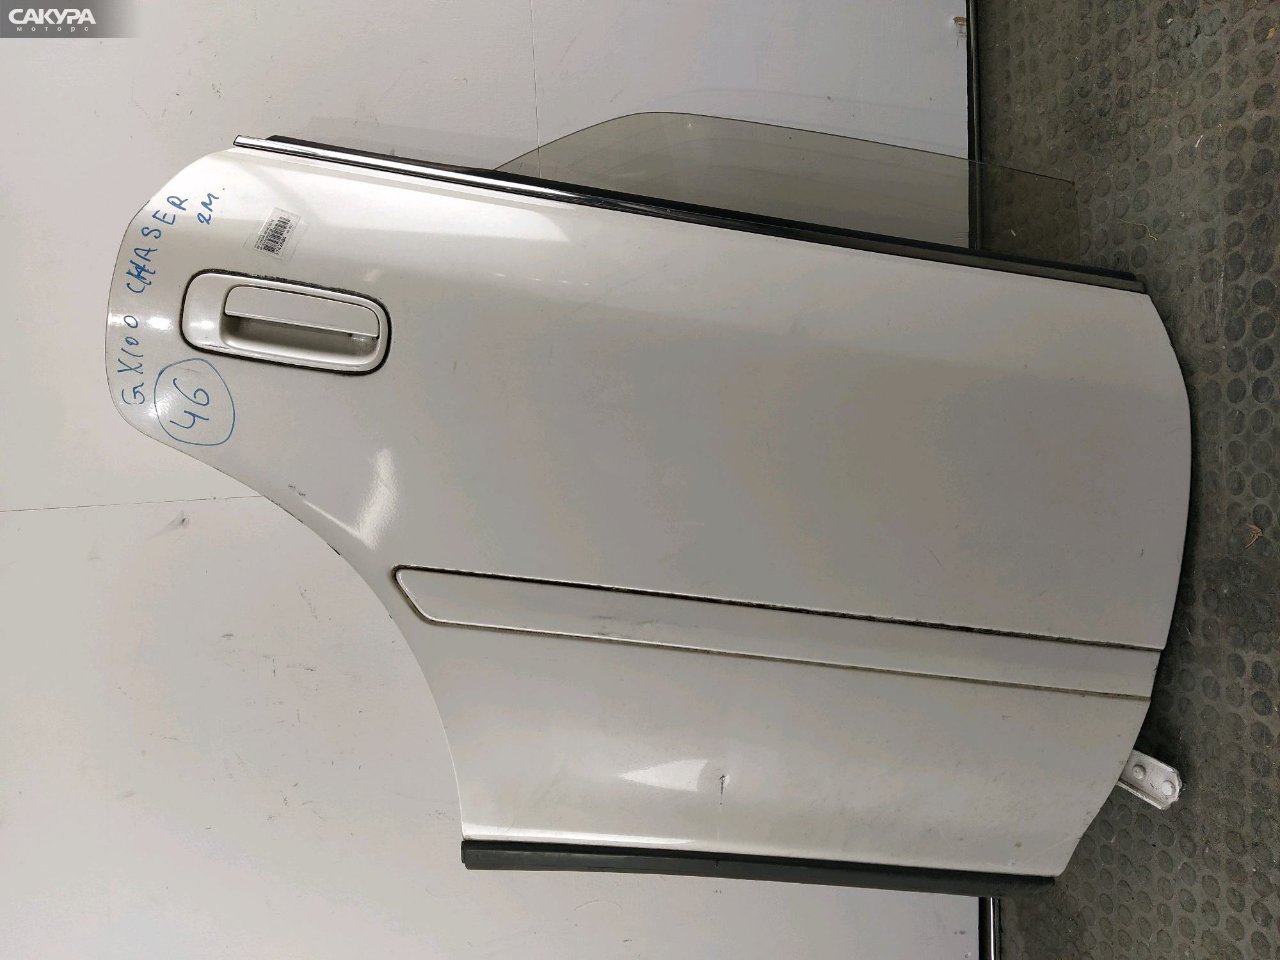 Дверь боковая задняя правая Toyota Chaser GX100 1G-FE: купить в Сакура Красноярск.